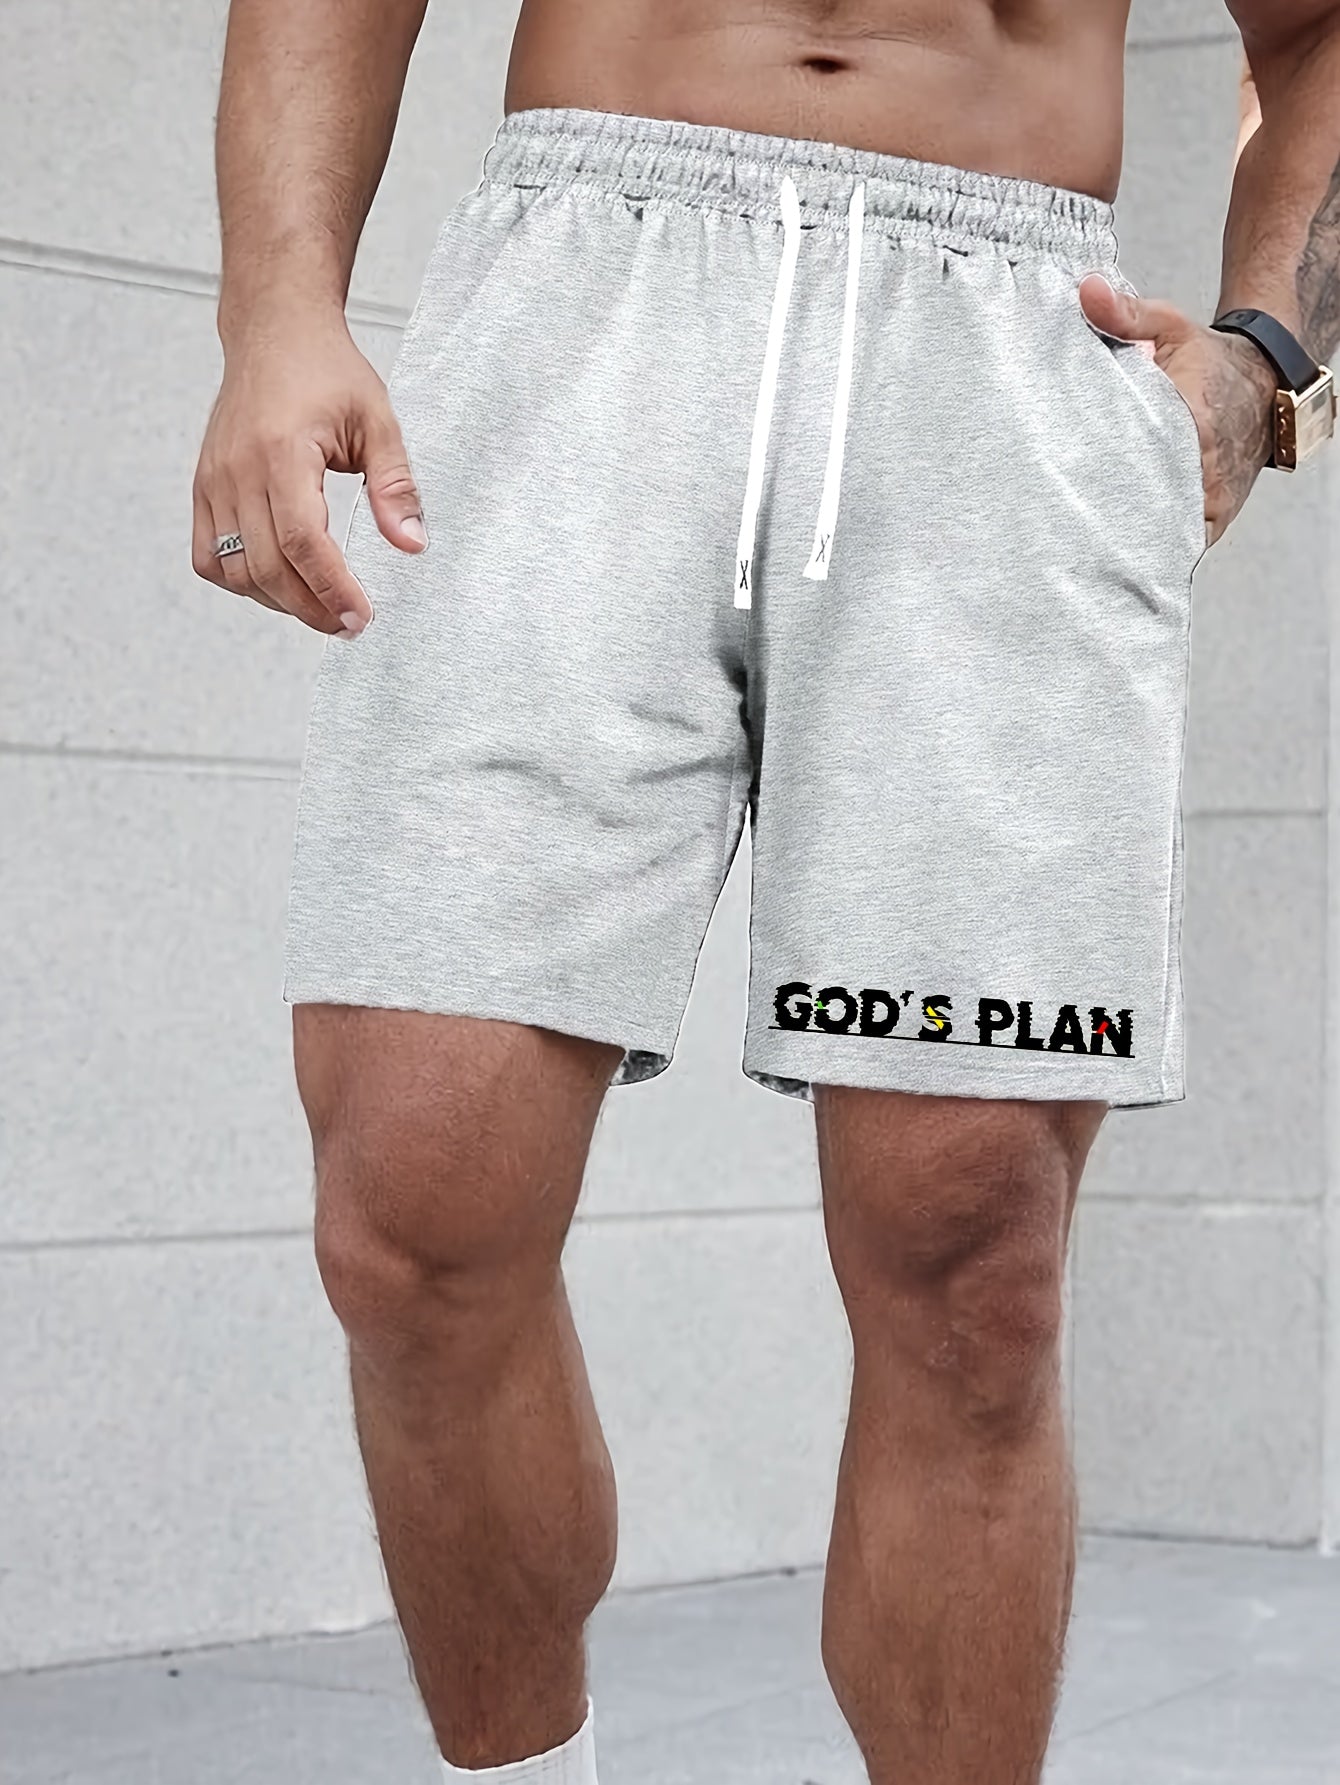 God's Plan Men's Christian Shorts claimedbygoddesigns